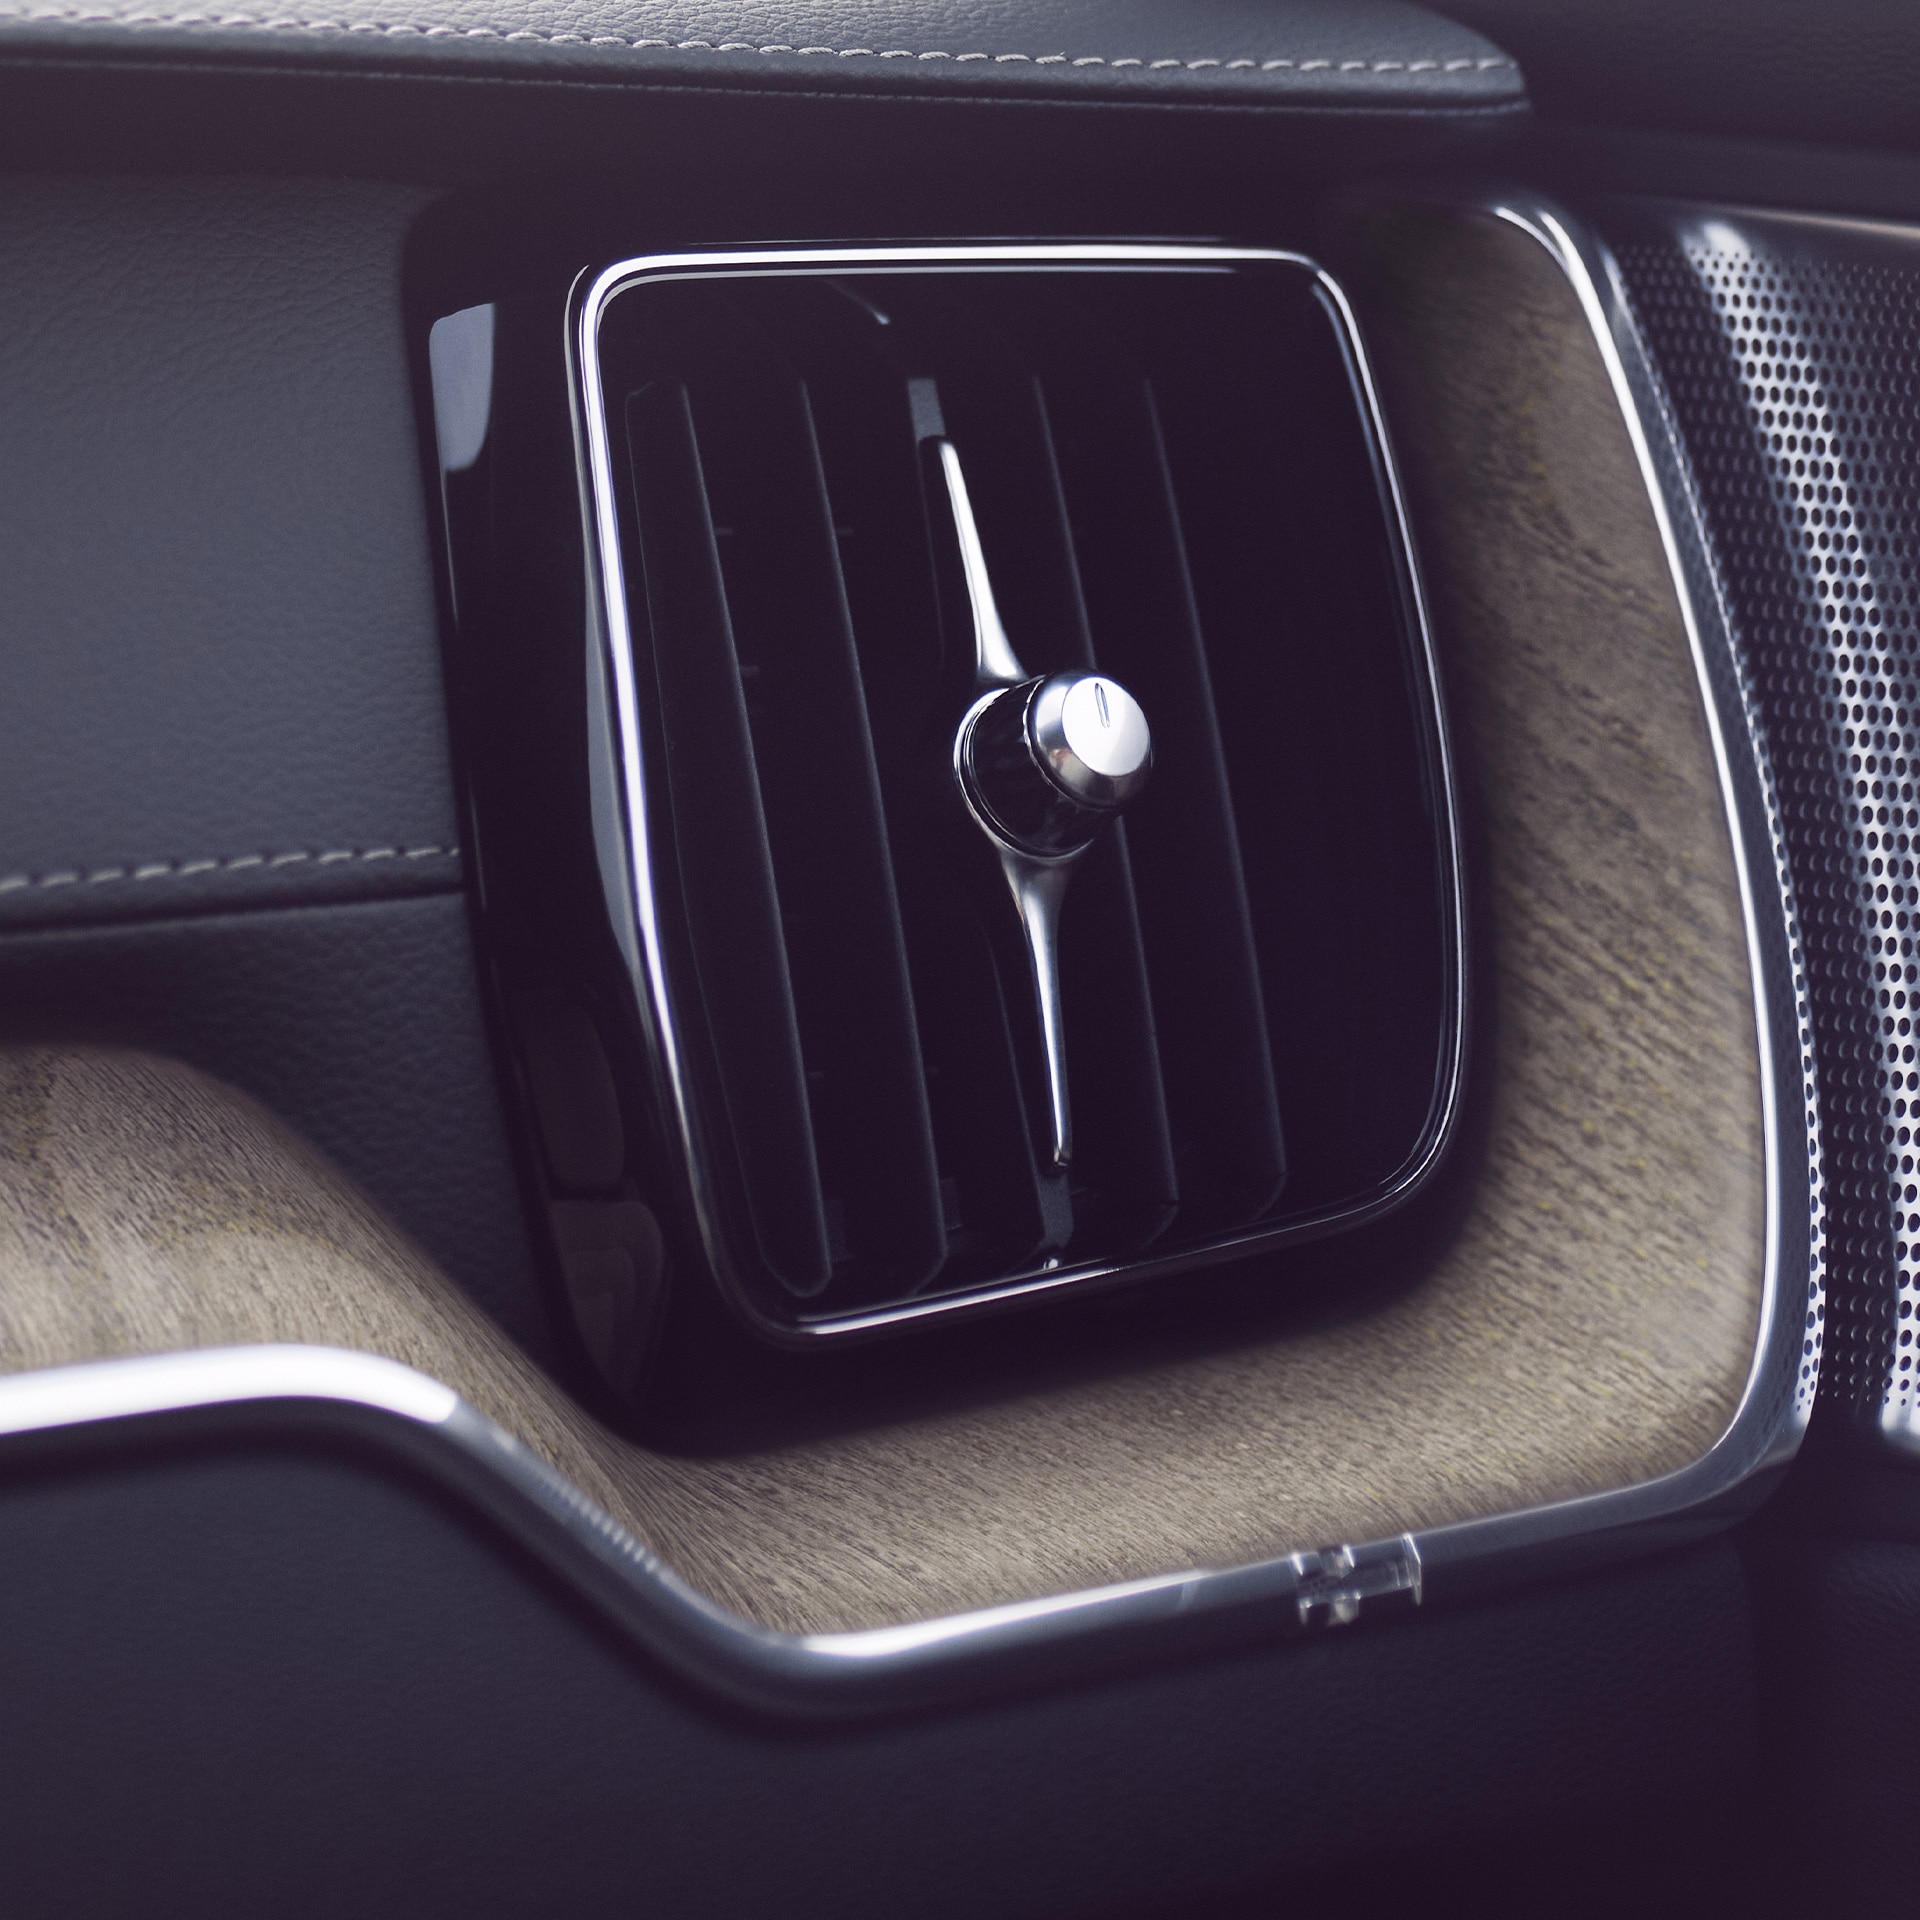 Χάρη στο προηγμένο φίλτρο καθαρισμού αέρα στο Volvo XC60, εσείς και οι συνεπιβάτες σας μπορείτε να απολαμβάνετε καλύτερη και πιο υγιεινή ποιότητα αέρα.